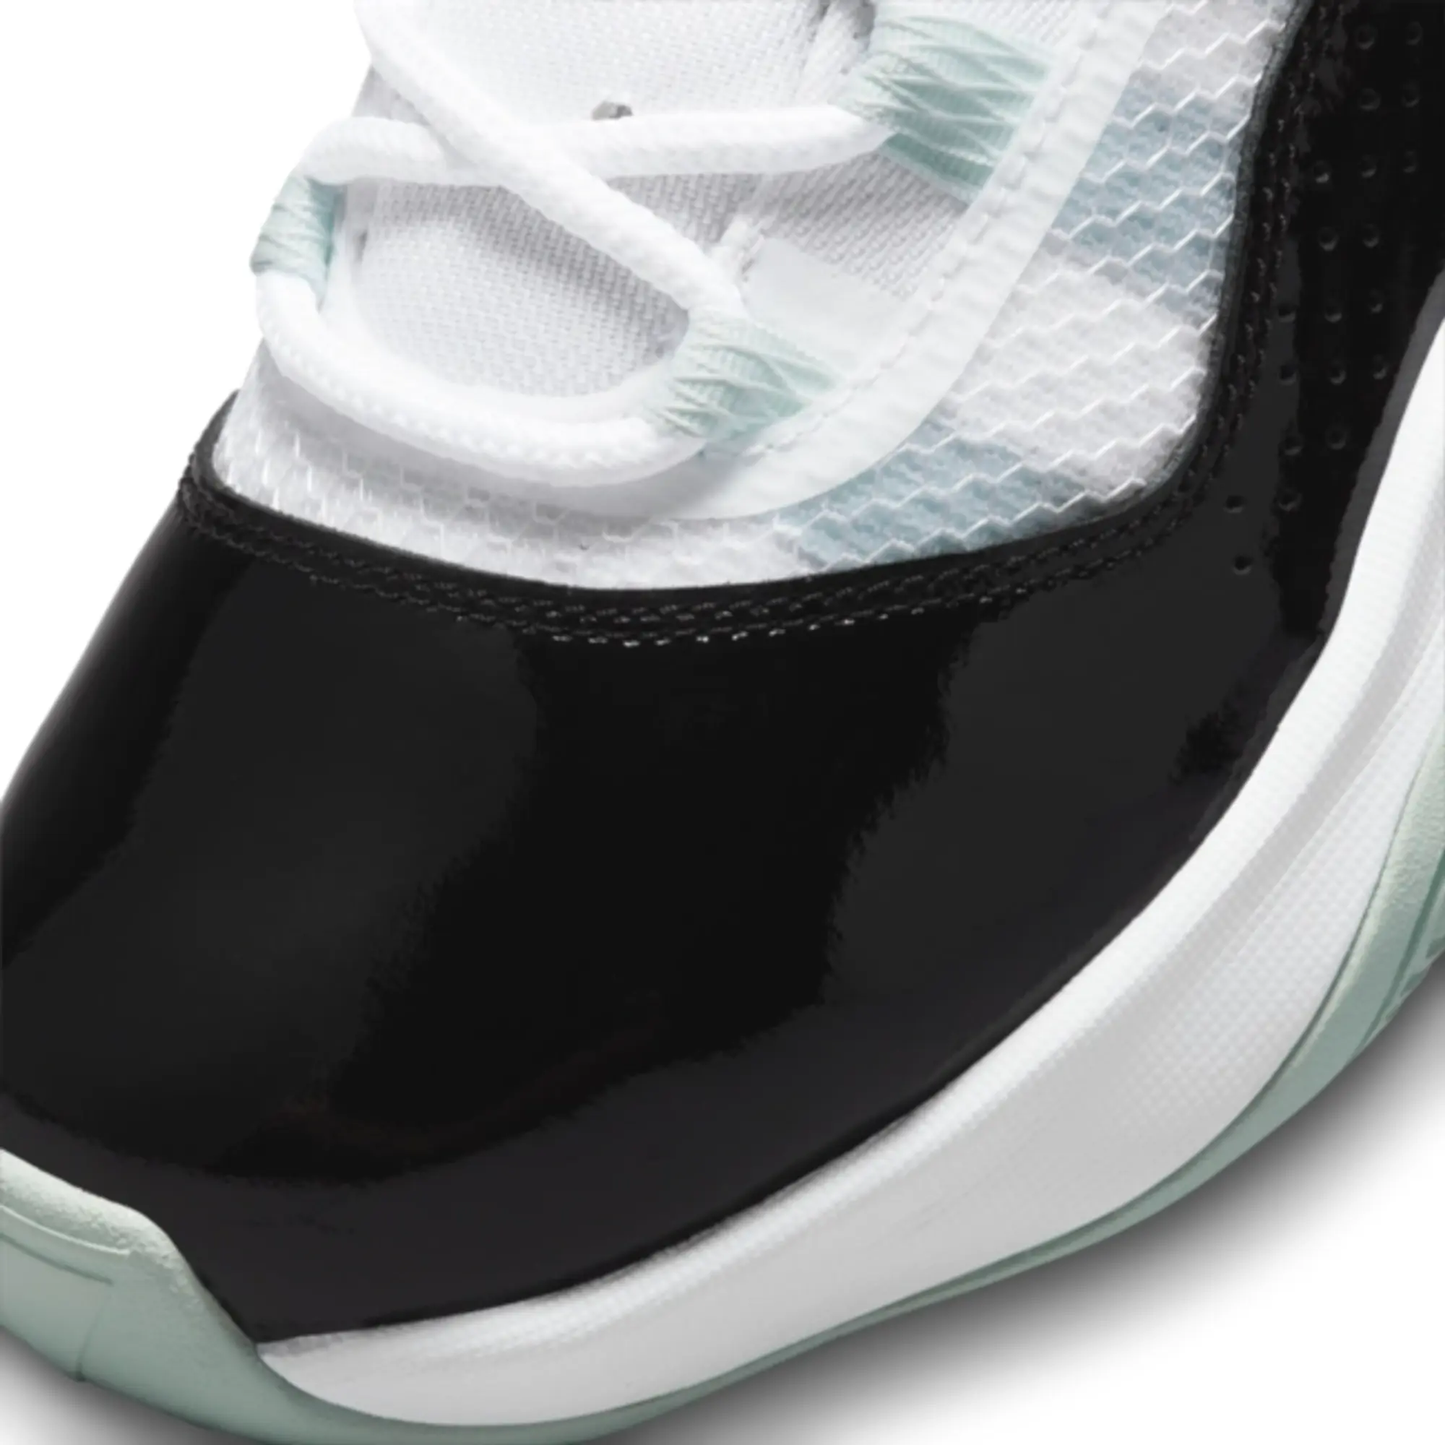 Nike - Air Jordan 11 CMFT Low - Barely Green